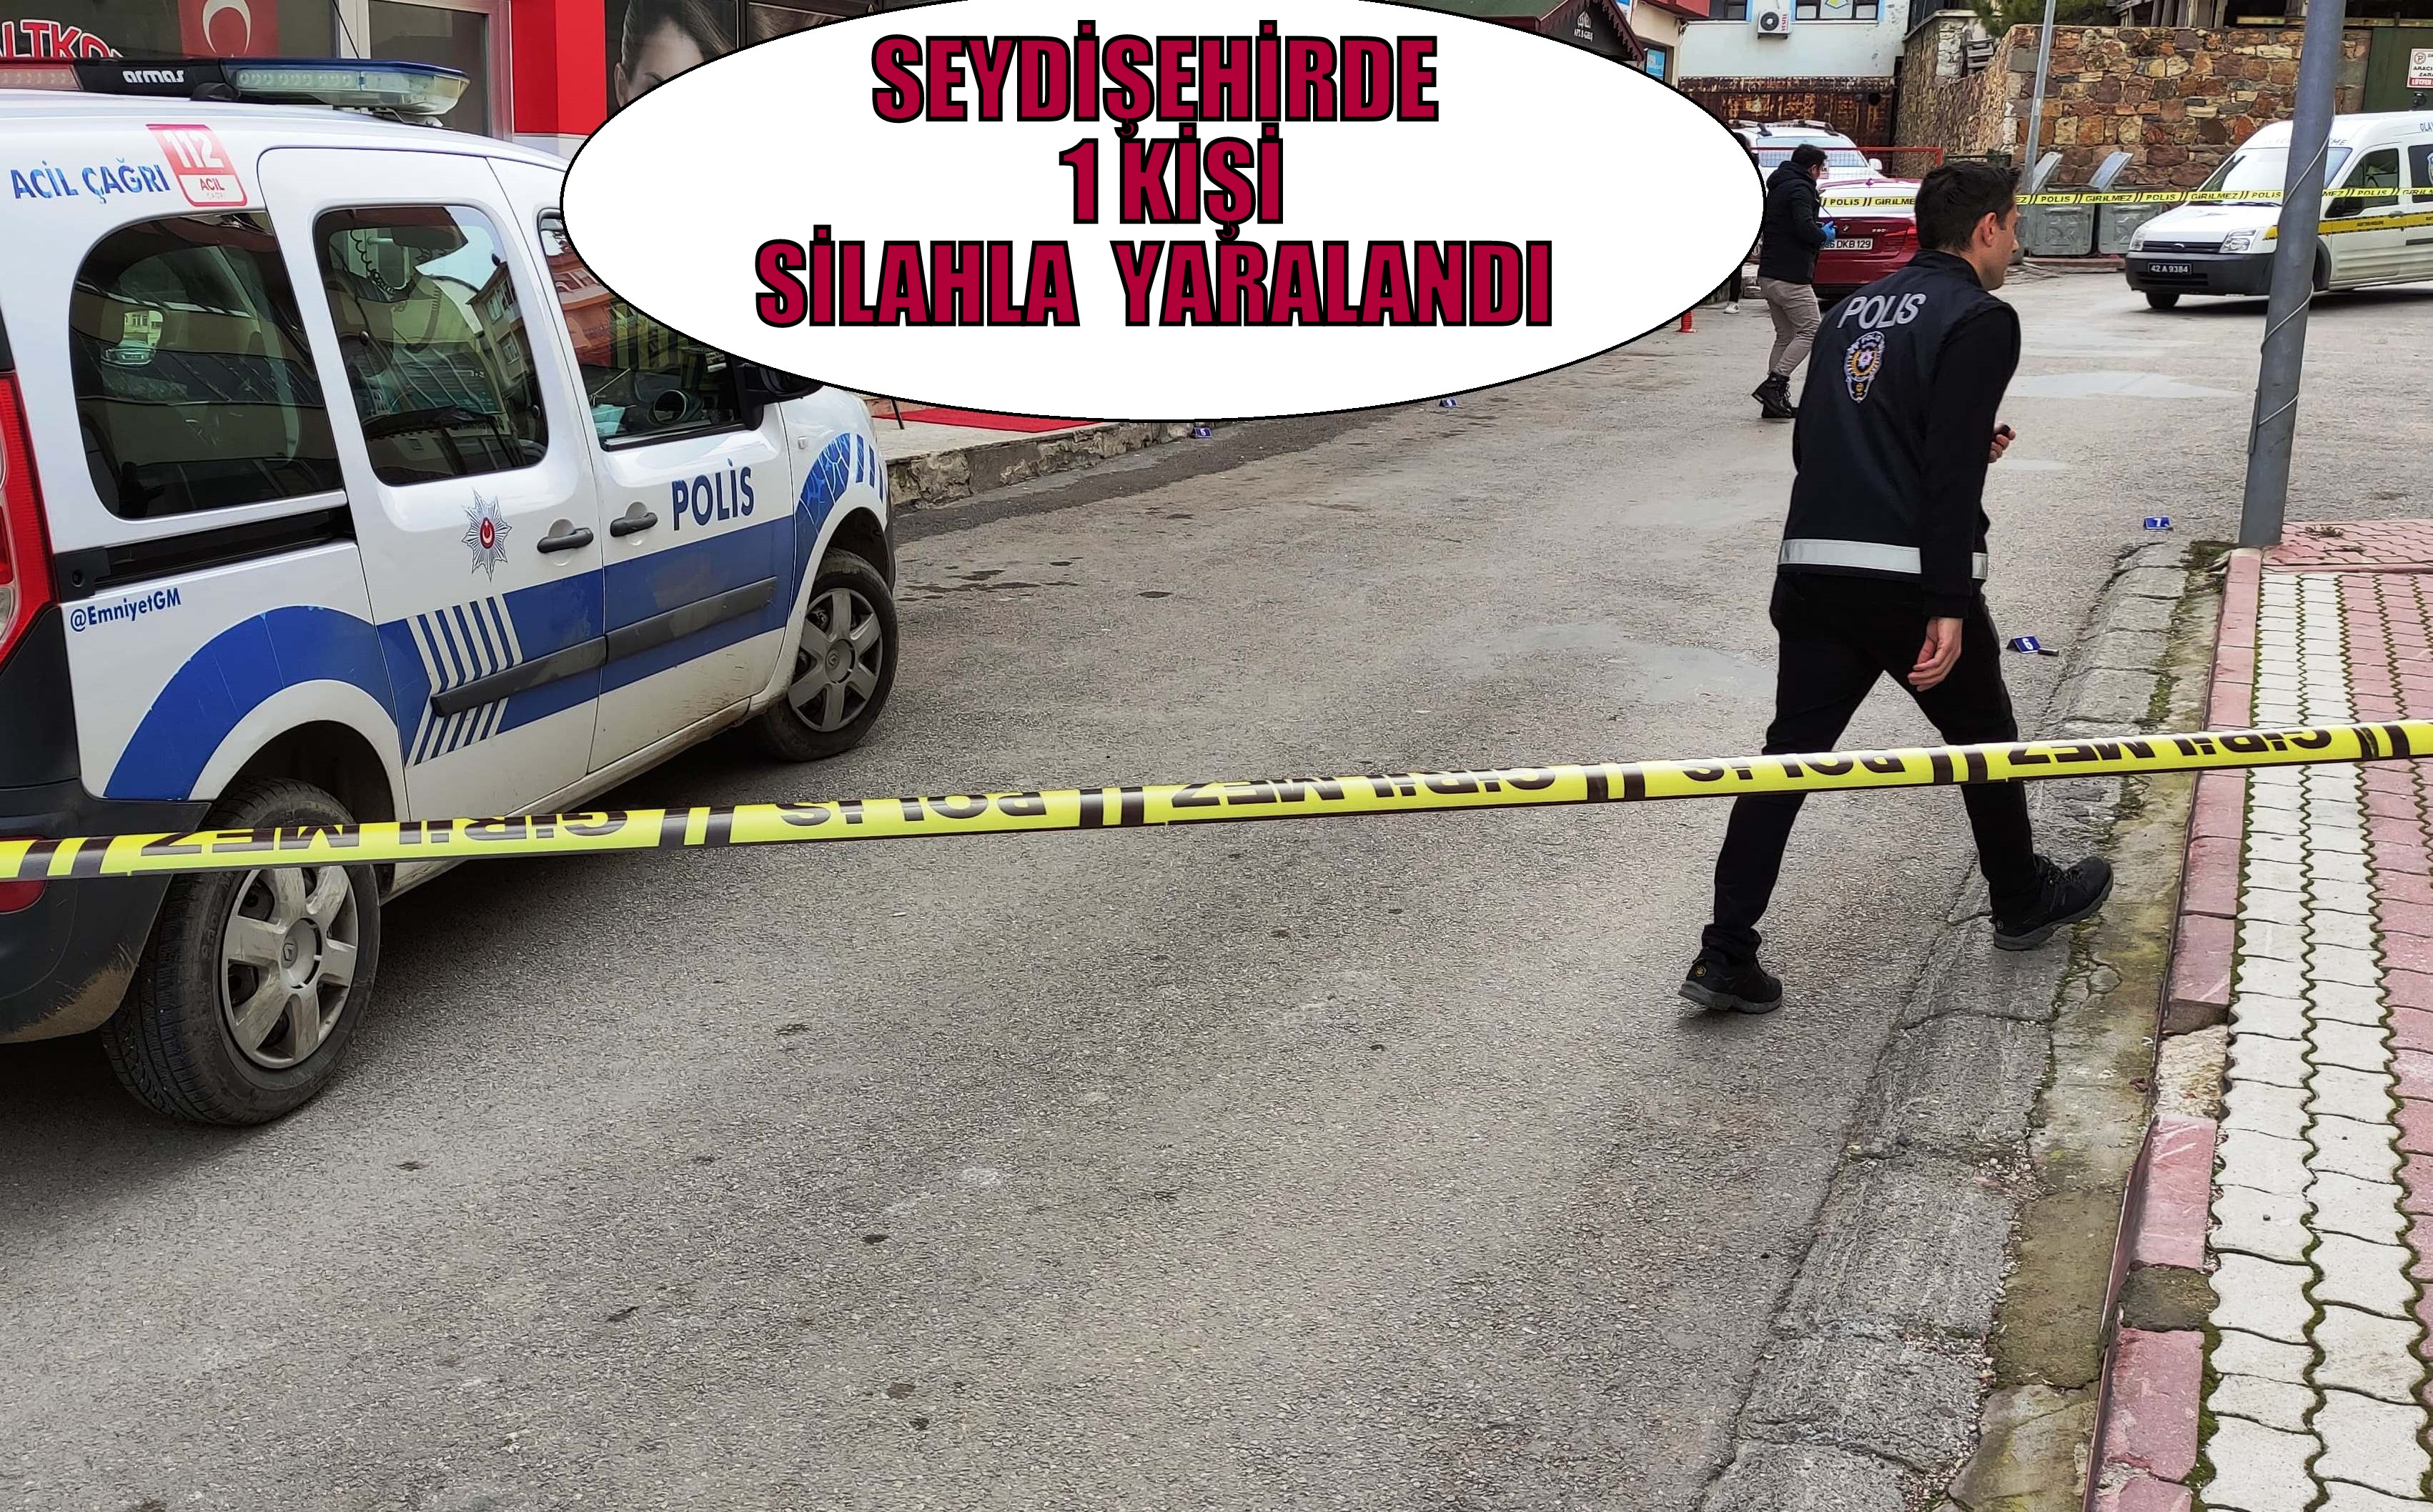 Seydişehir'de silahlı yaralama; 1 kişi yaralandı